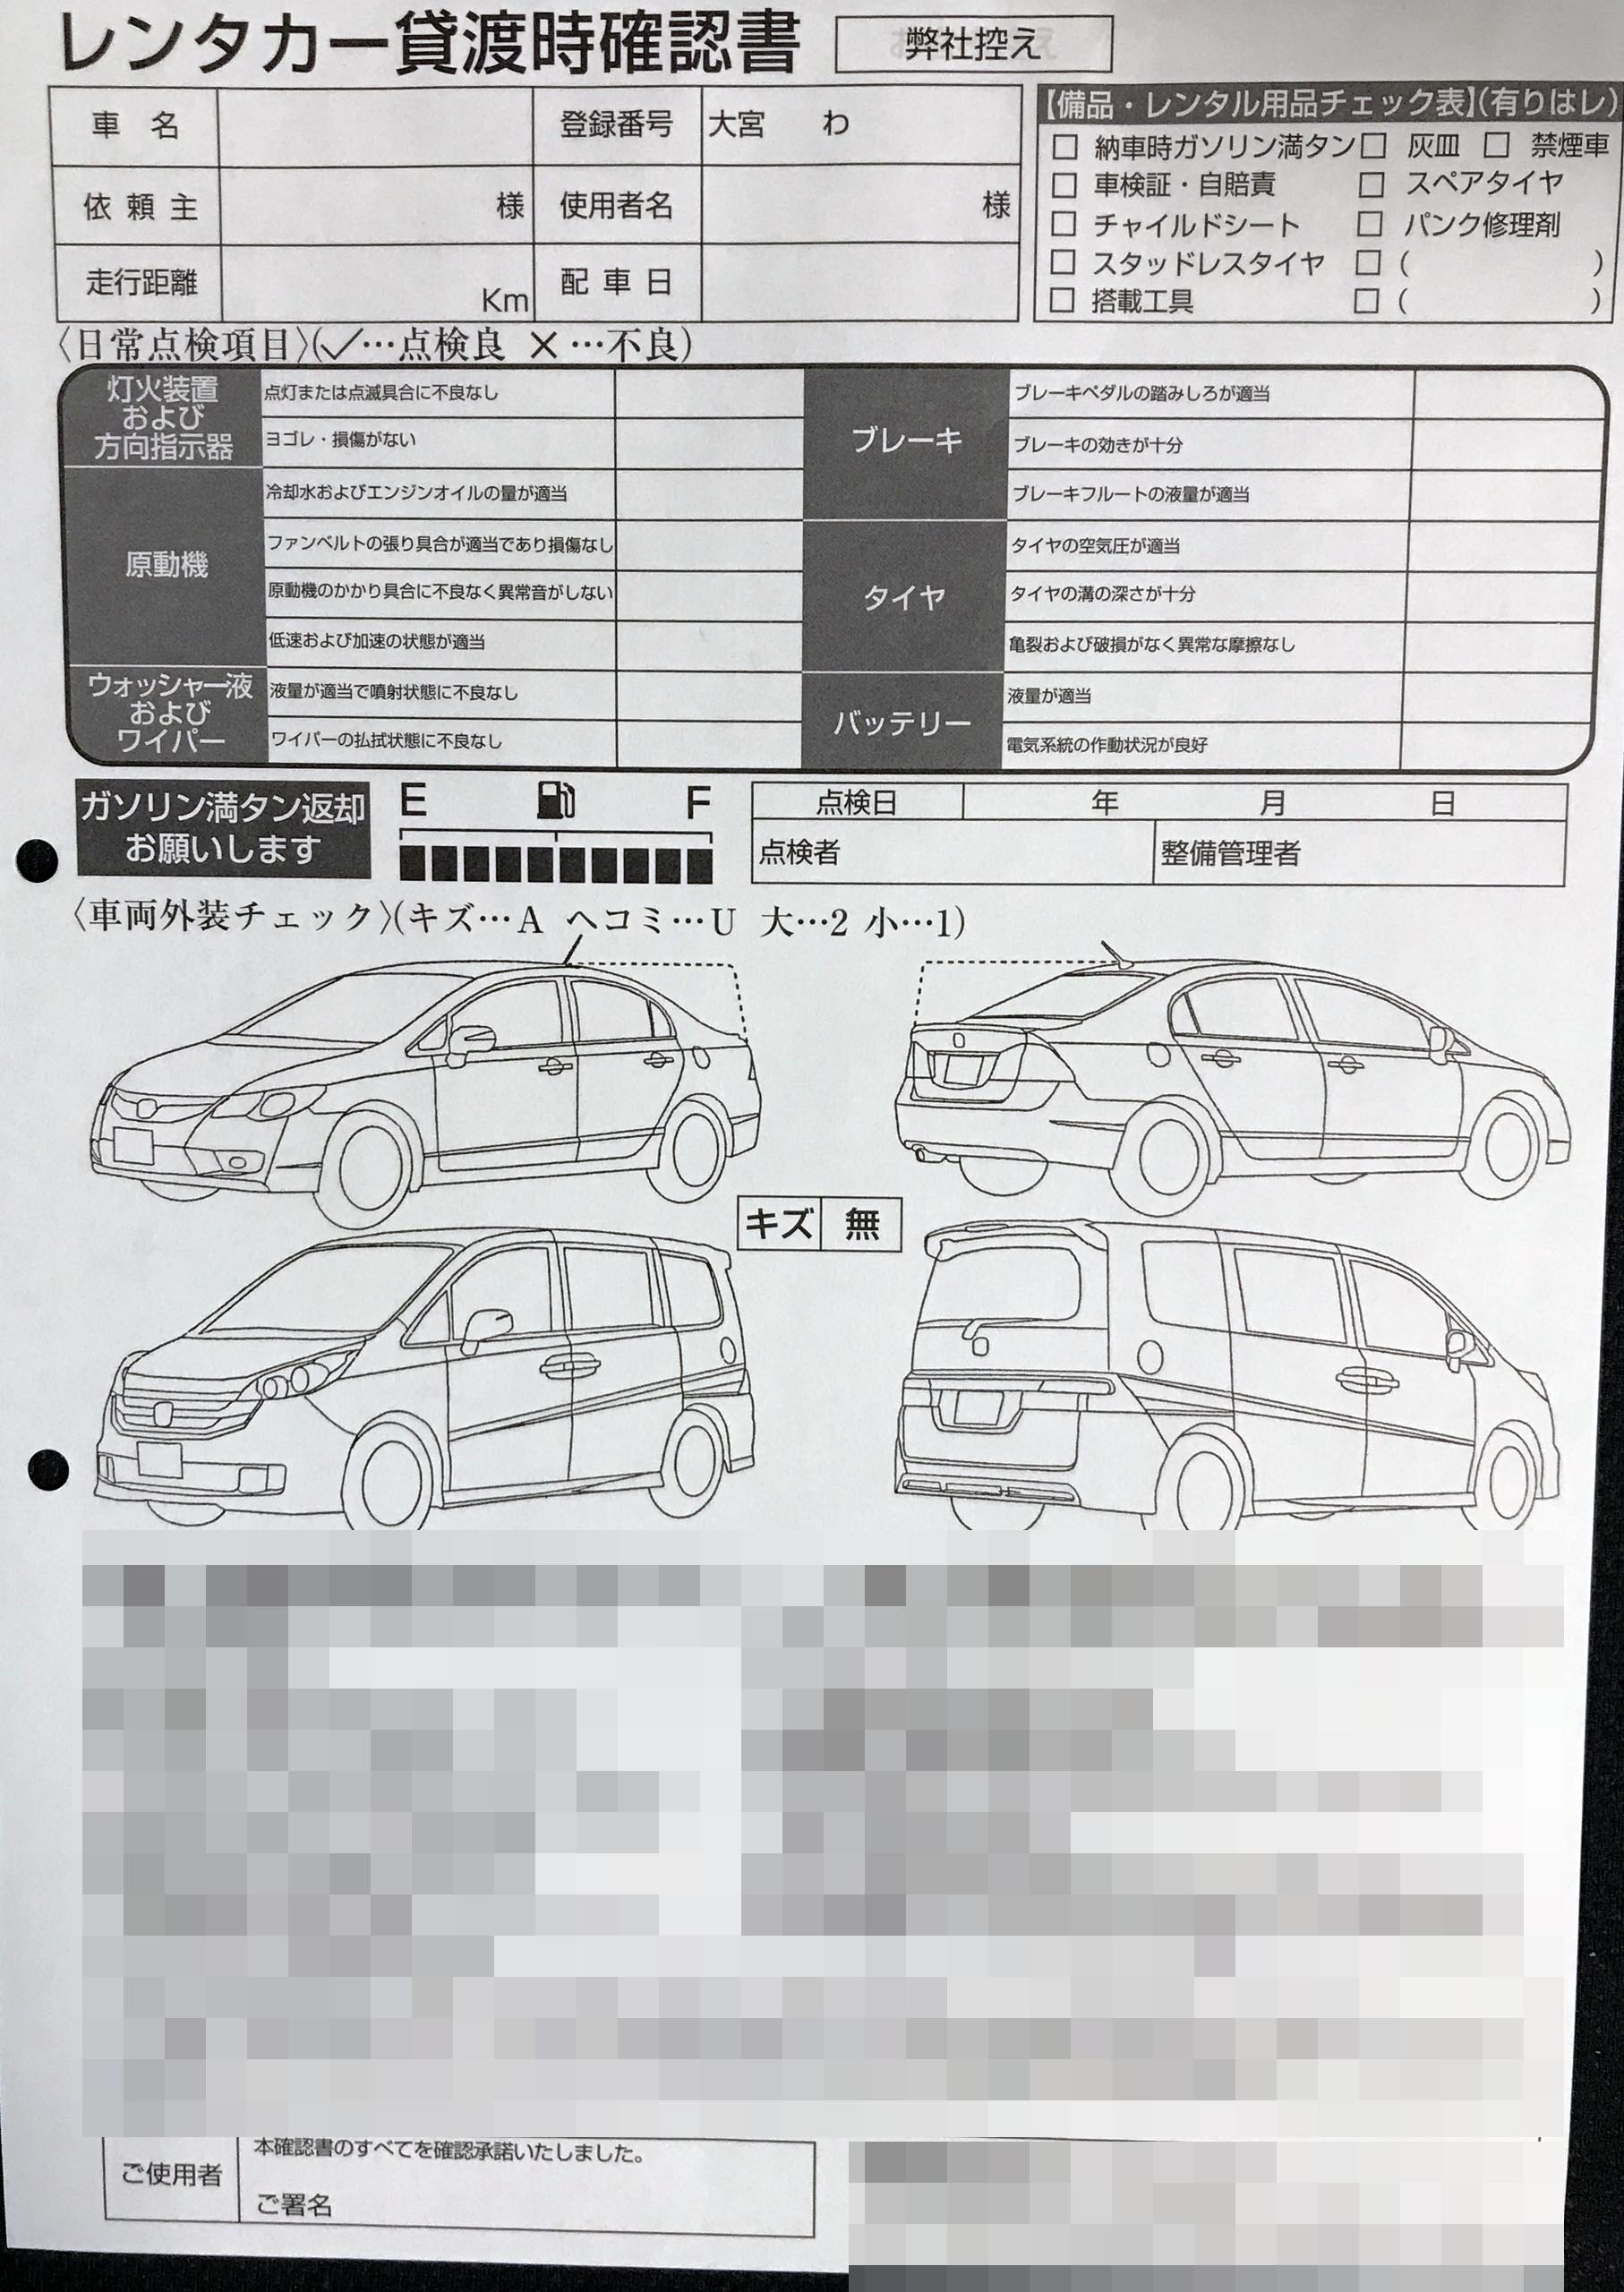 埼玉県　自動車整備業　貸渡時確認書　(２枚複写)